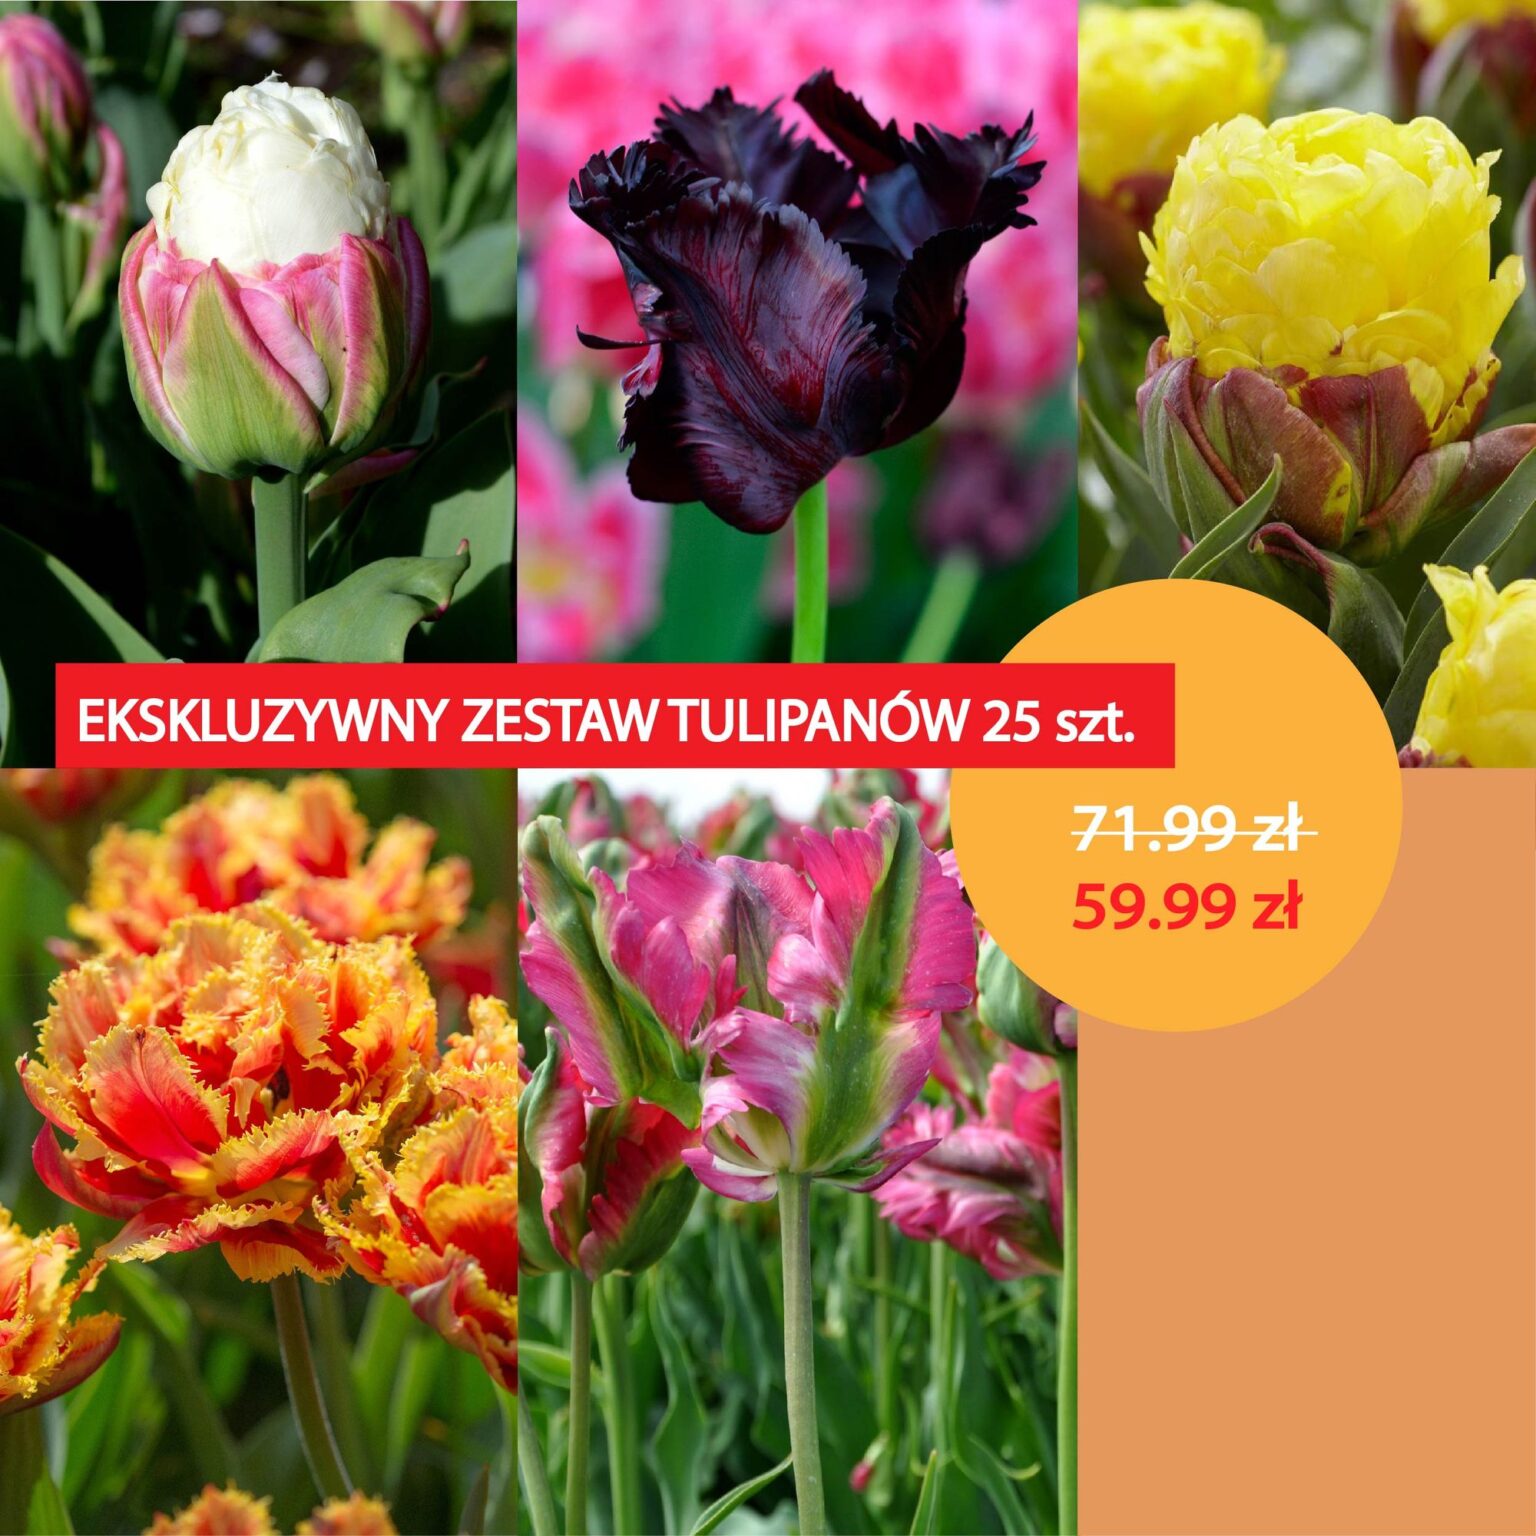 Karuzelajpg_mobile_tulipan ekskluzywnysmall